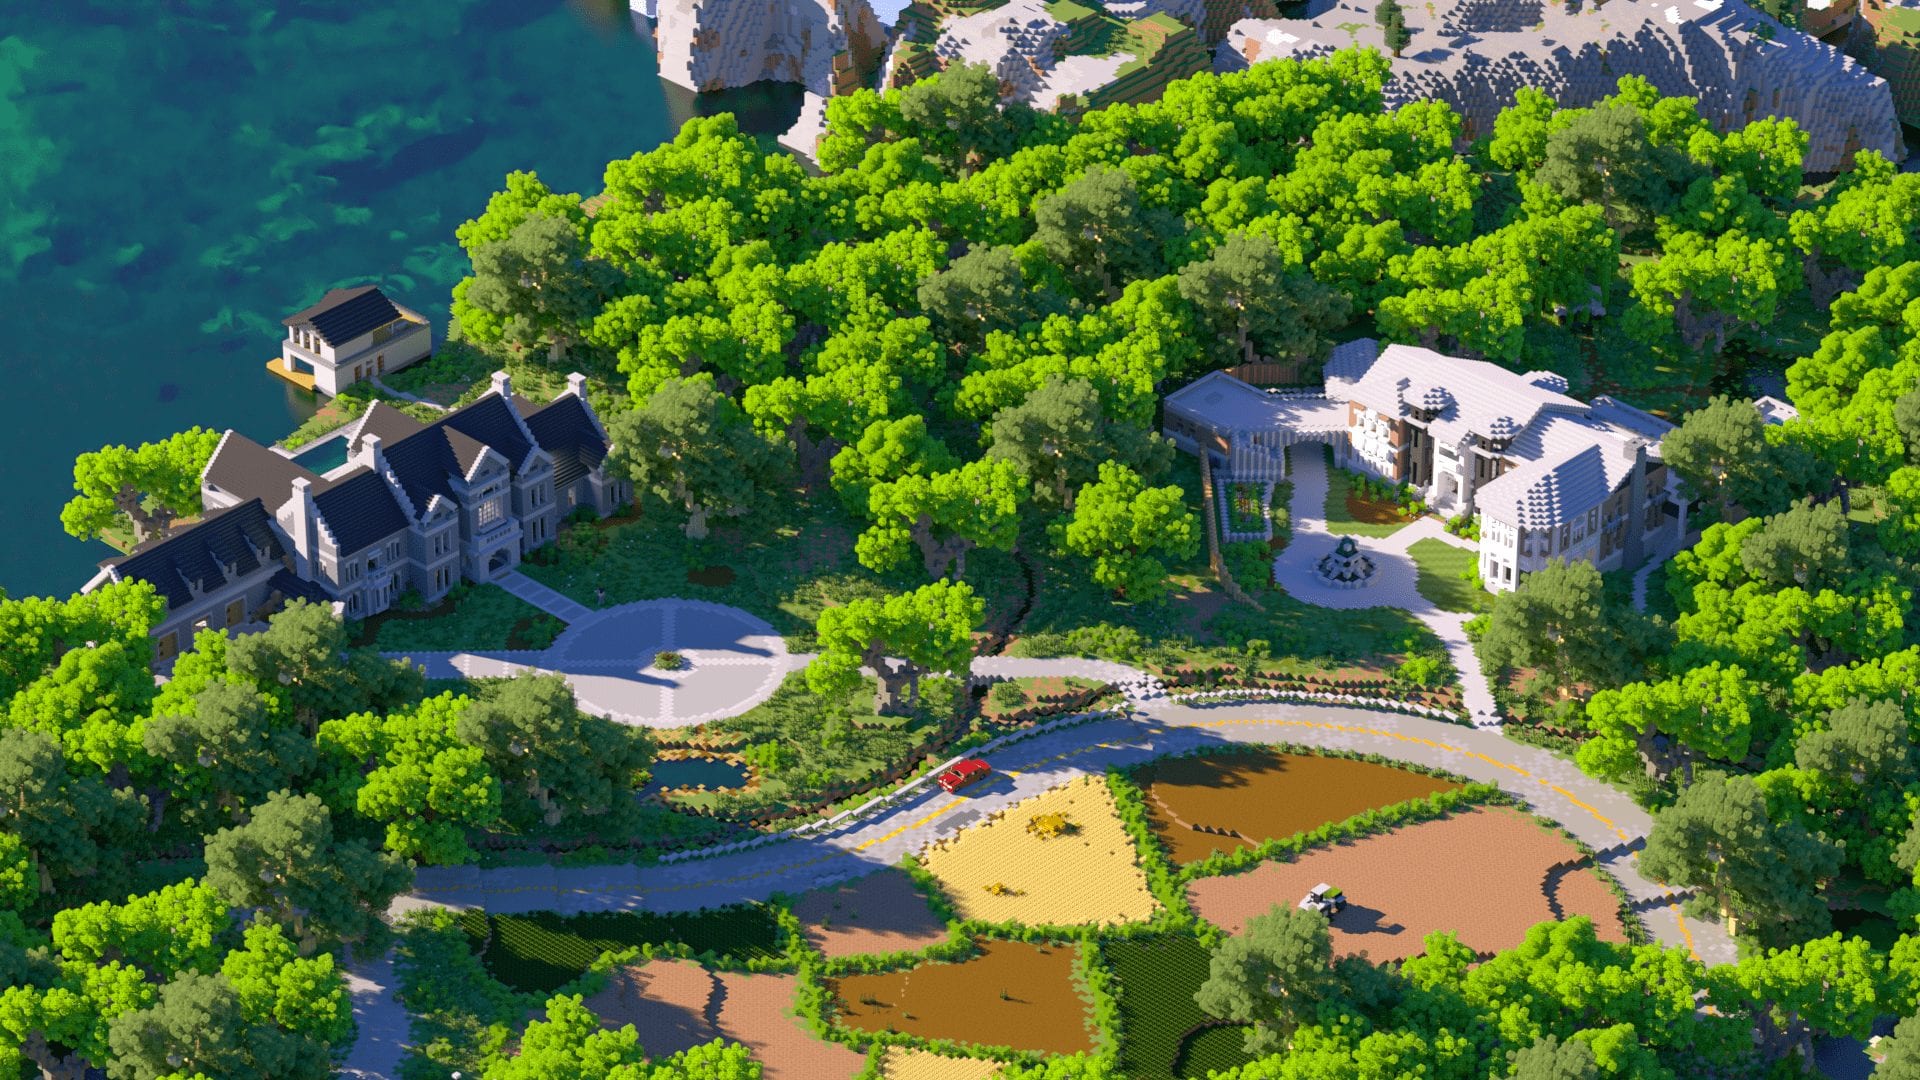 $1,000,000 Mansions Minecraft Aurrora